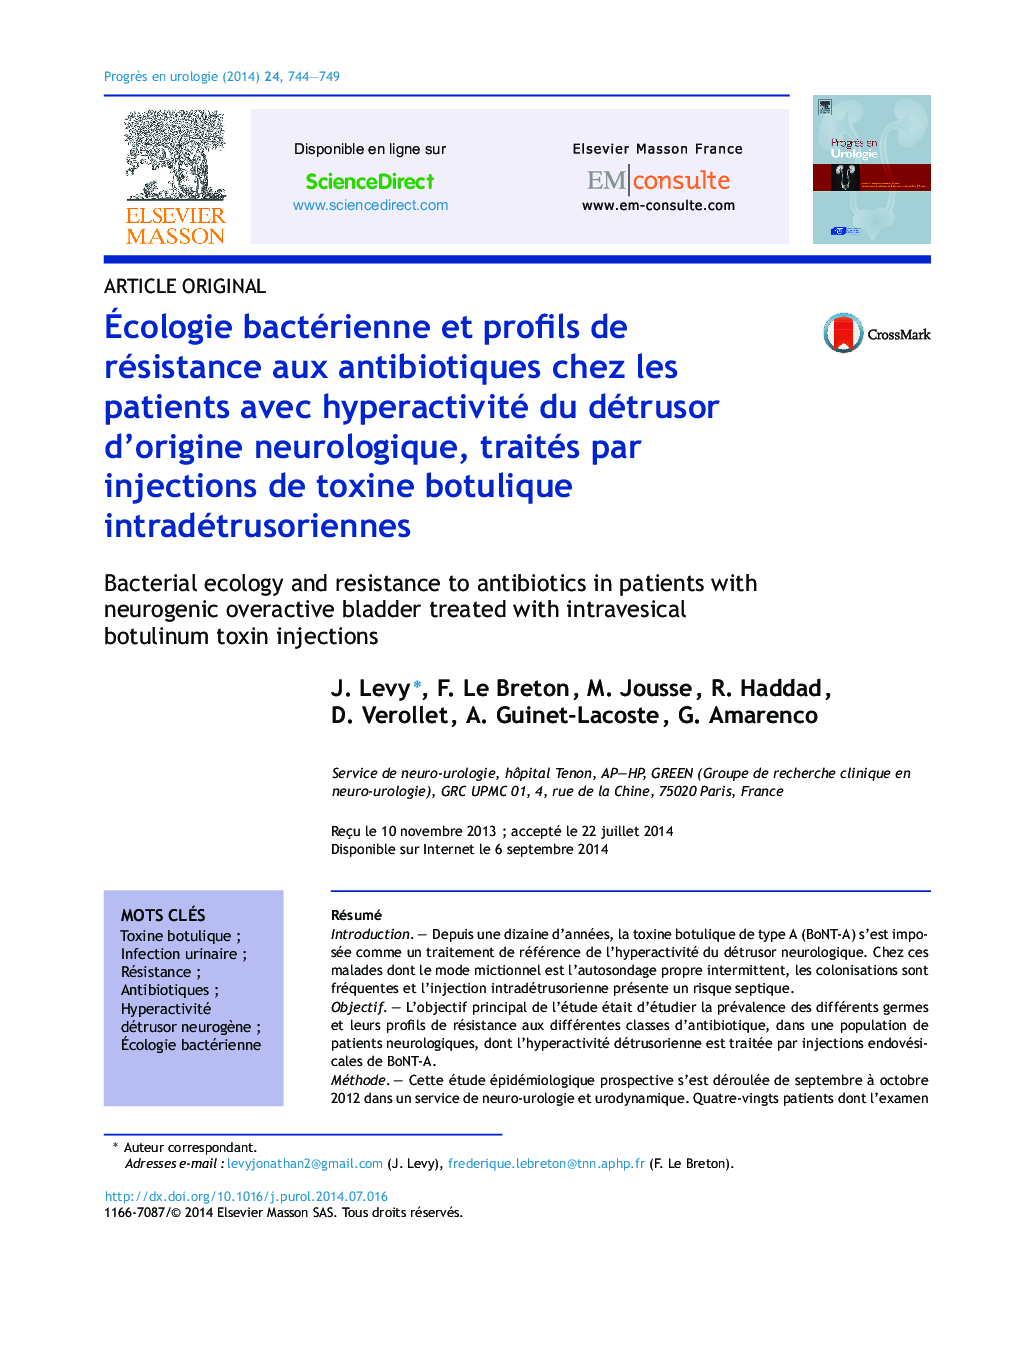 Ãcologie bactérienne et profils de résistance aux antibiotiques chez les patients avec hyperactivité du détrusor d'origine neurologique, traités par injections de toxine botulique intradétrusoriennes